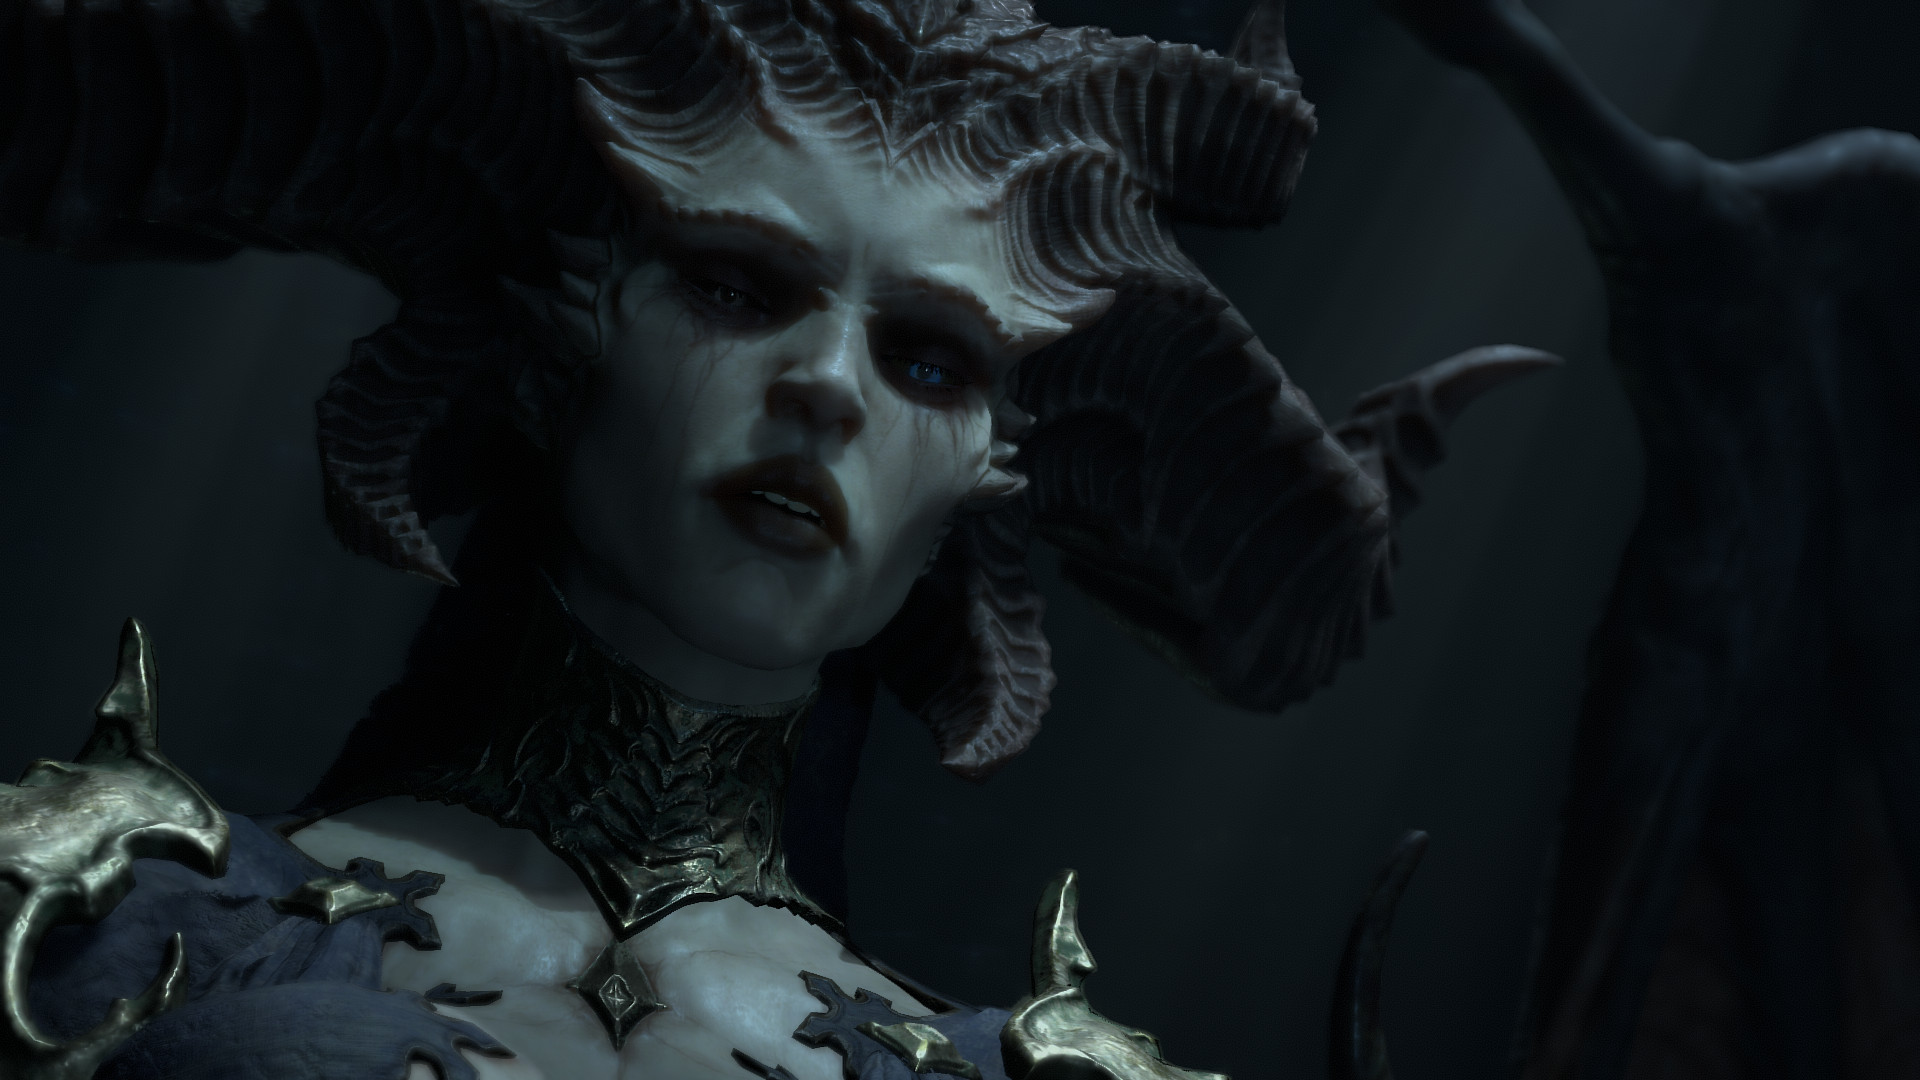 La mejor configuración de Diablo 4: Lilith mira a alguien desde arriba, en una habitación oscura, con una mirada de lástima